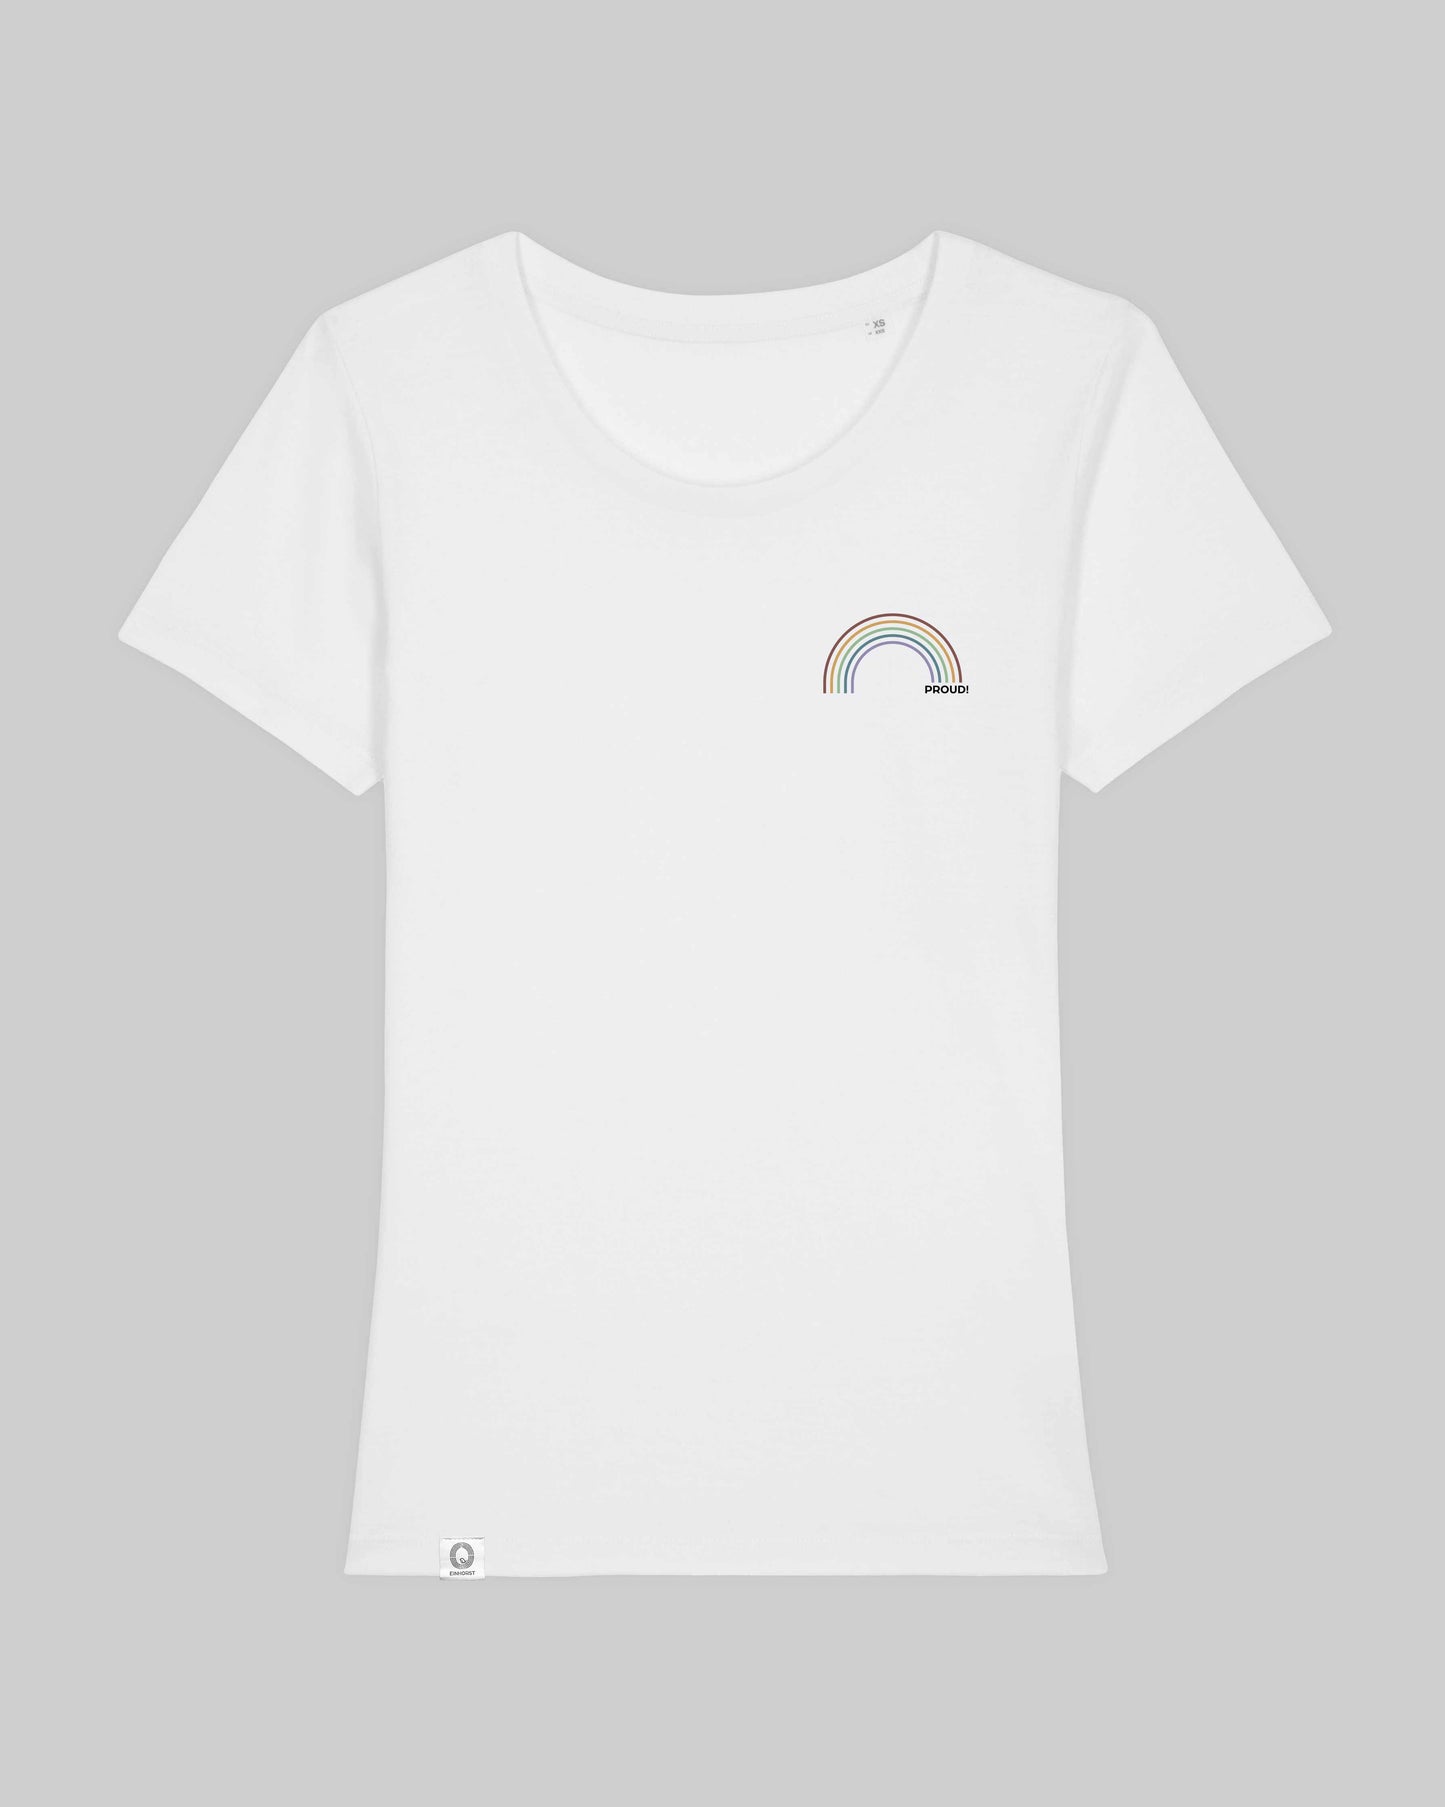 EINHORST® Organic Shirt tailliert in "Weiß" mit dem Motiv "proud Regenbogen" in der Kombination bunter Regenbogen mit schwarzer Schrift, Bild von Shirt von vorne